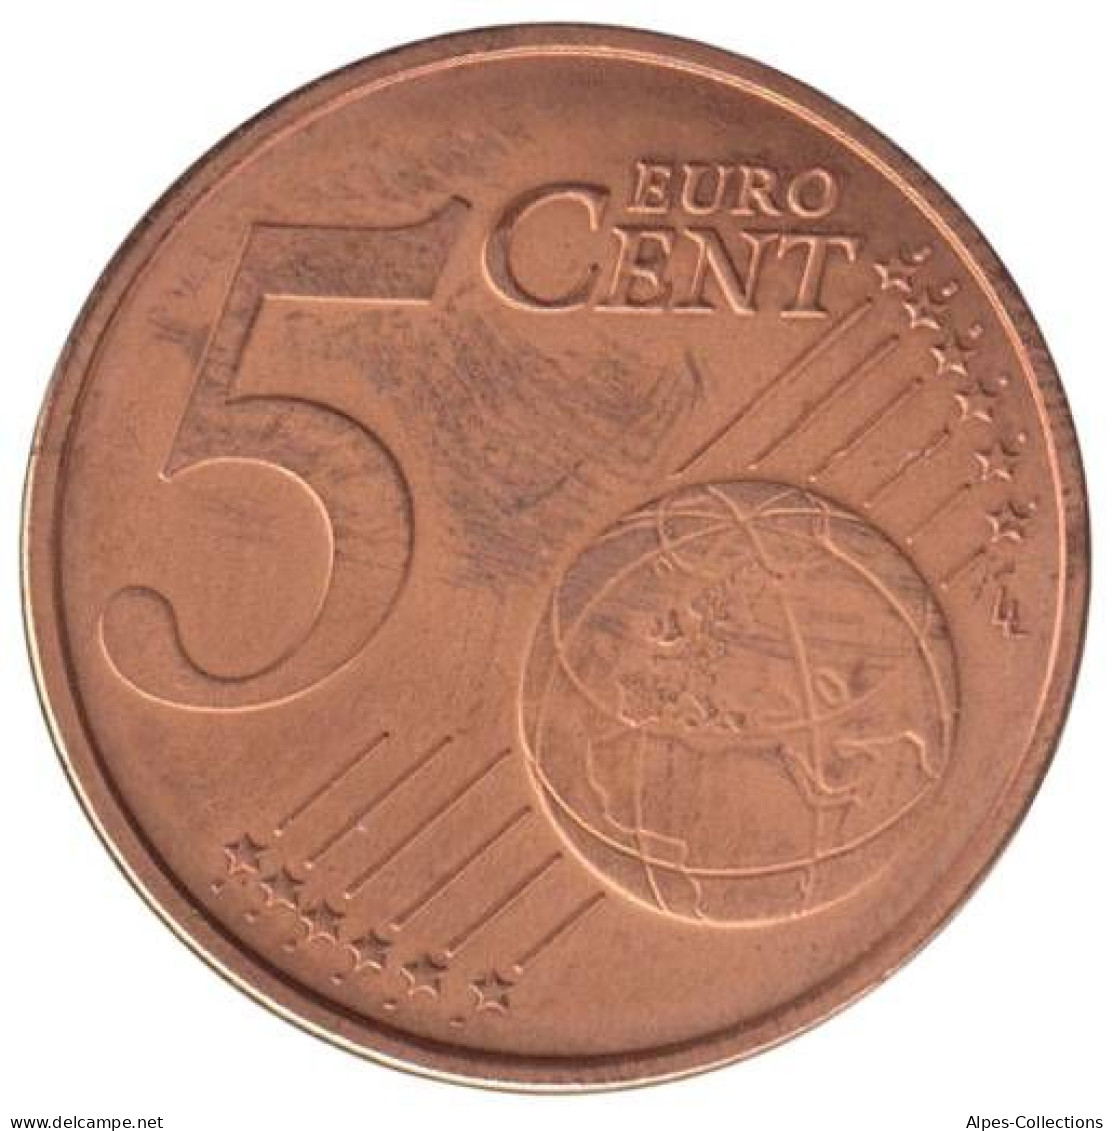 FR00504.1 - FRANCE - 5 Cents - 2004 - France